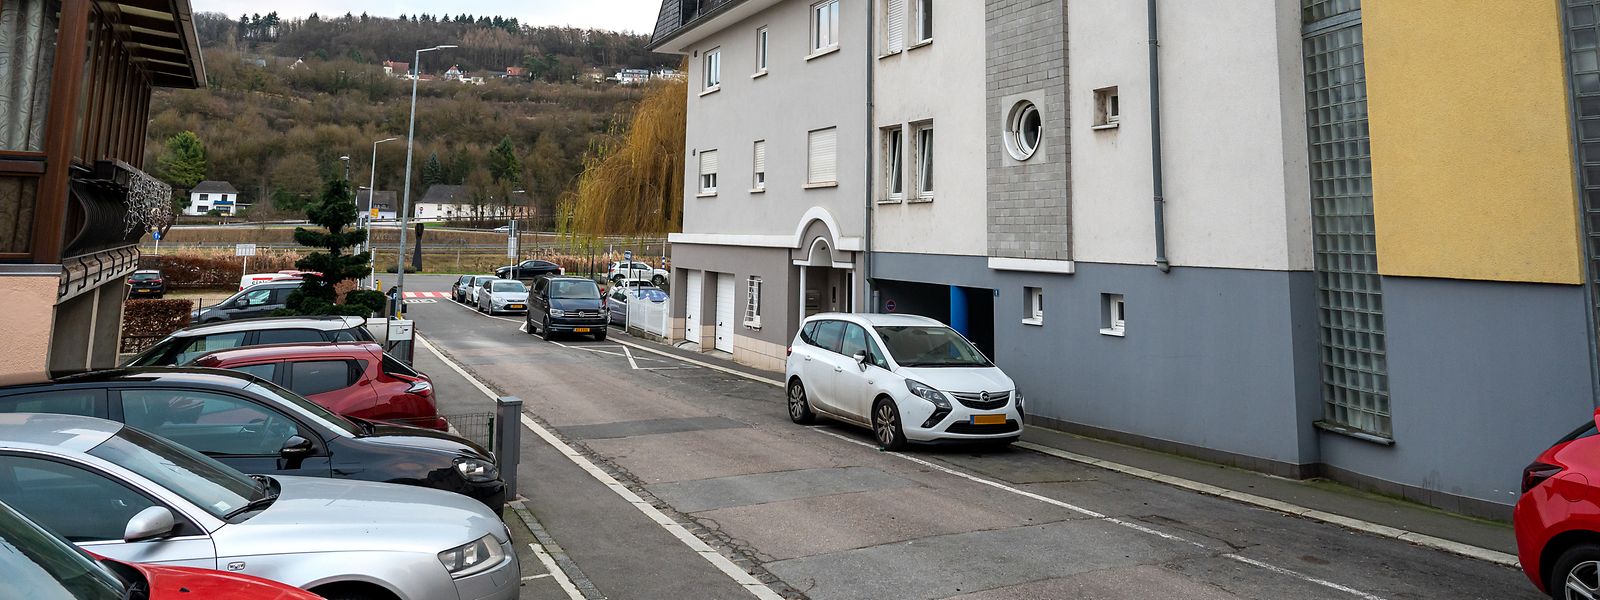 Gegen 6.30 Uhr nimmt ein Sondereinsatzkommando der Polizei am Samstag in einem Mehrfamilienhaus in der Rue Victor Prost in Grevenmacher einen 30-jährigen Mann fest.